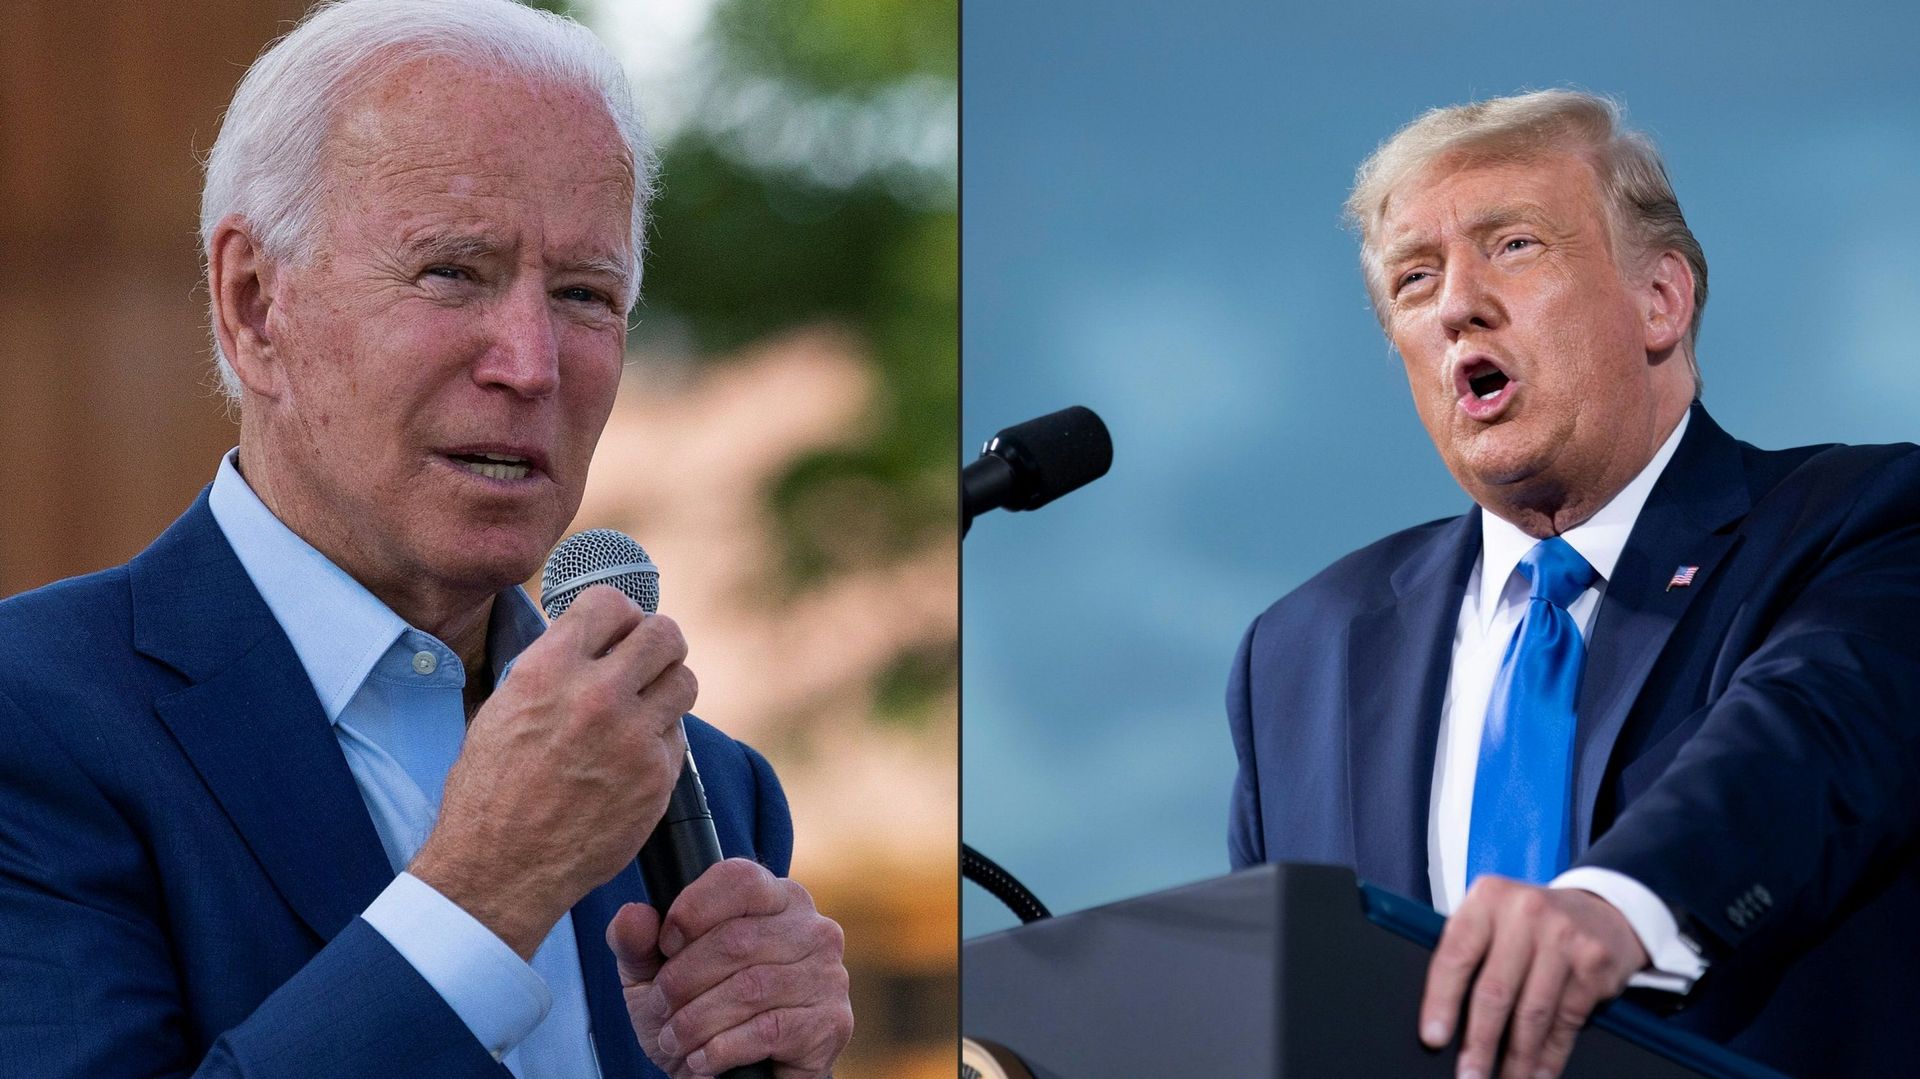 Présidentielle 2020 aux États-Unis : Biden doit faire un test antidopage au prochain débat, réclame Trump